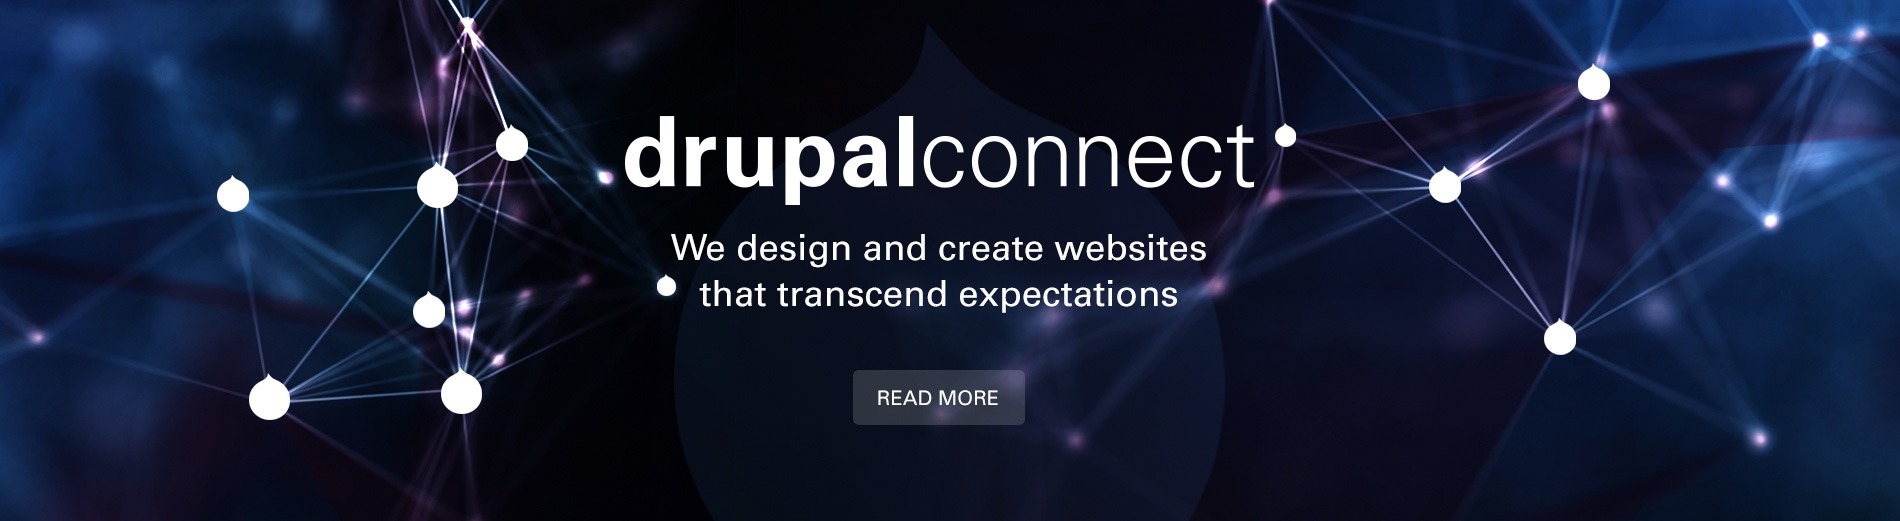 Drupal Connect's Services